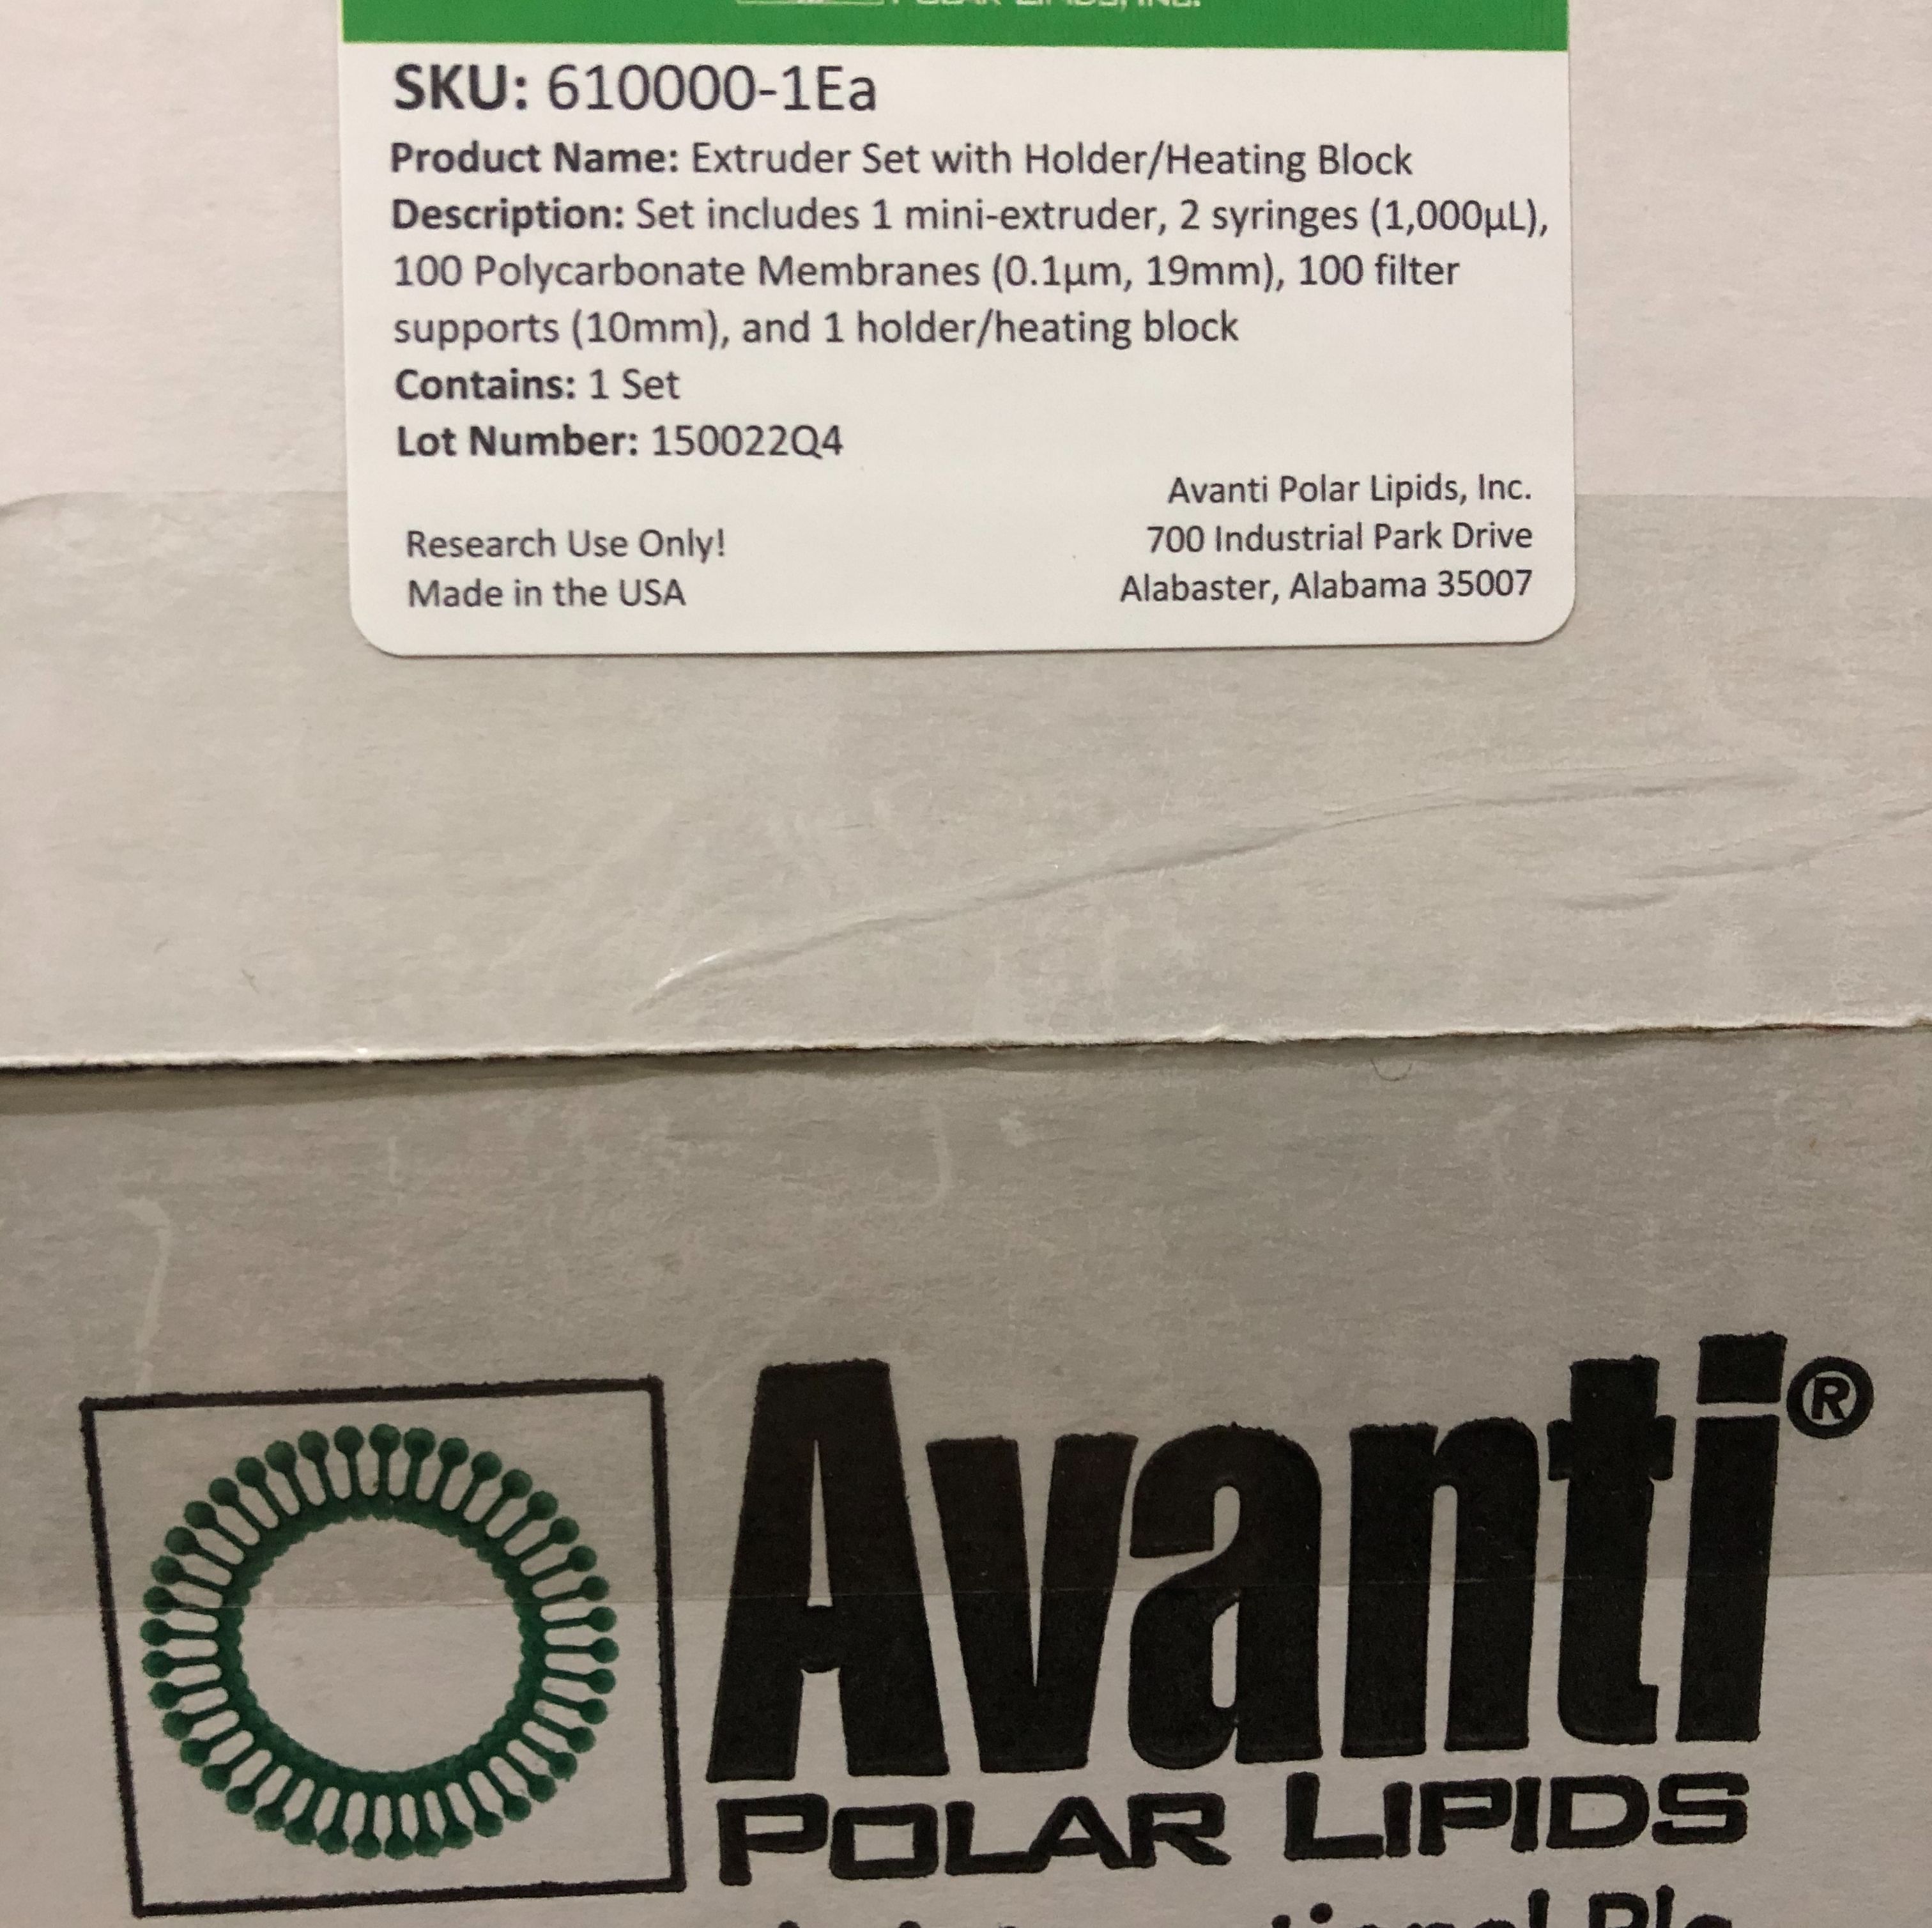 大量现货Avanti货号610000挤出器套件[带支架(加热块)]13611631389上海睿安生物